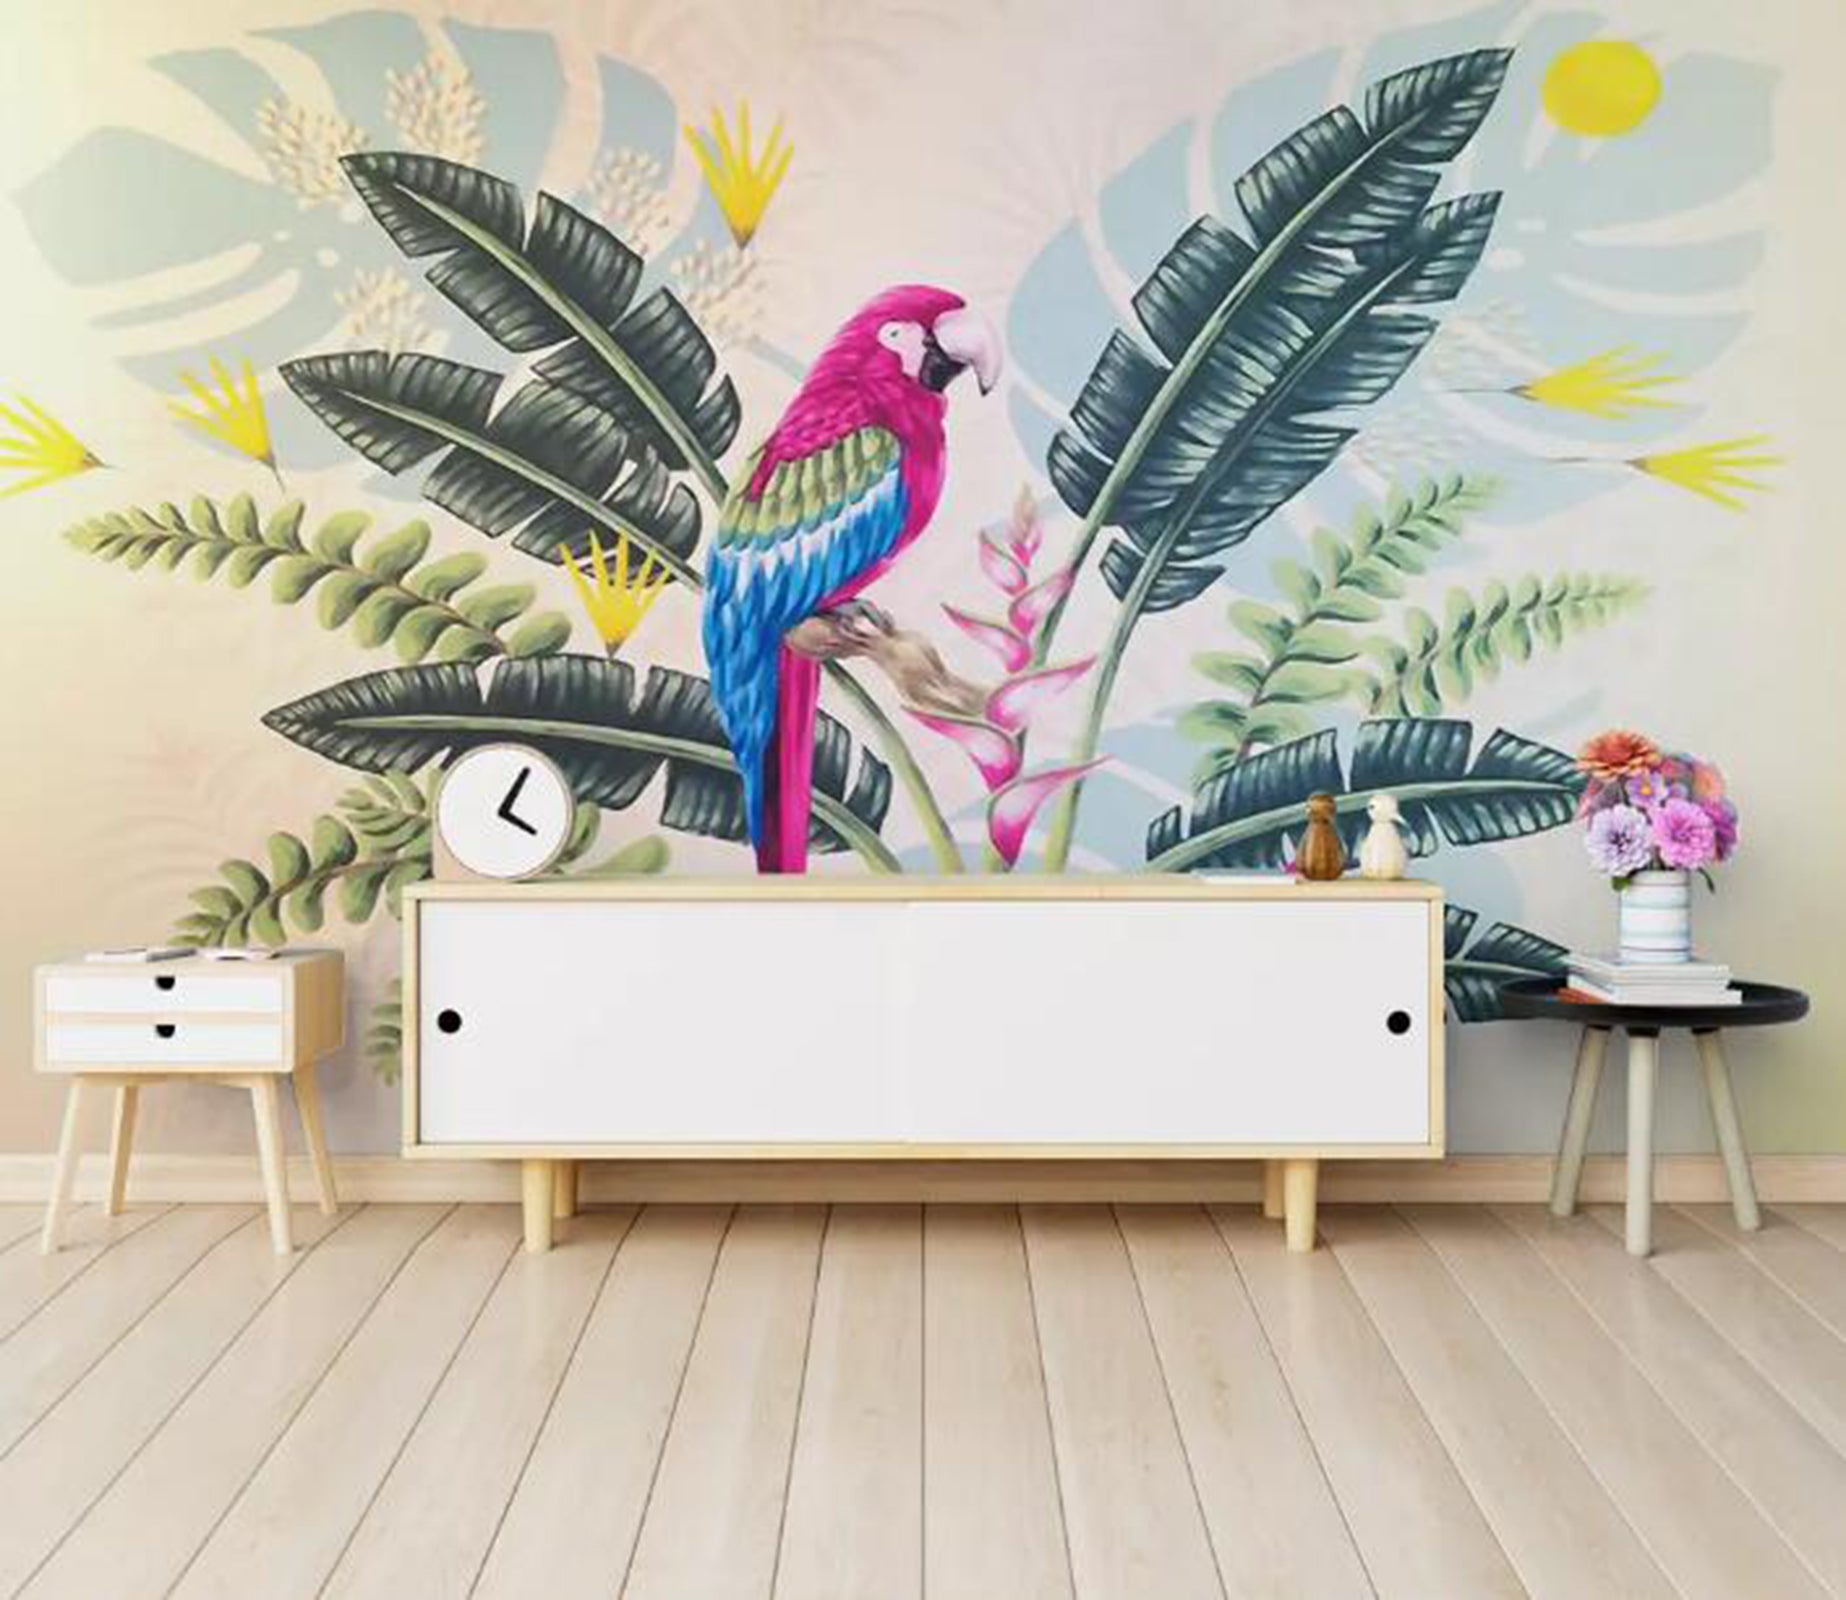 3D Colorful Parrot WG02 Wall Murals Wallpaper AJ Wallpaper 2 